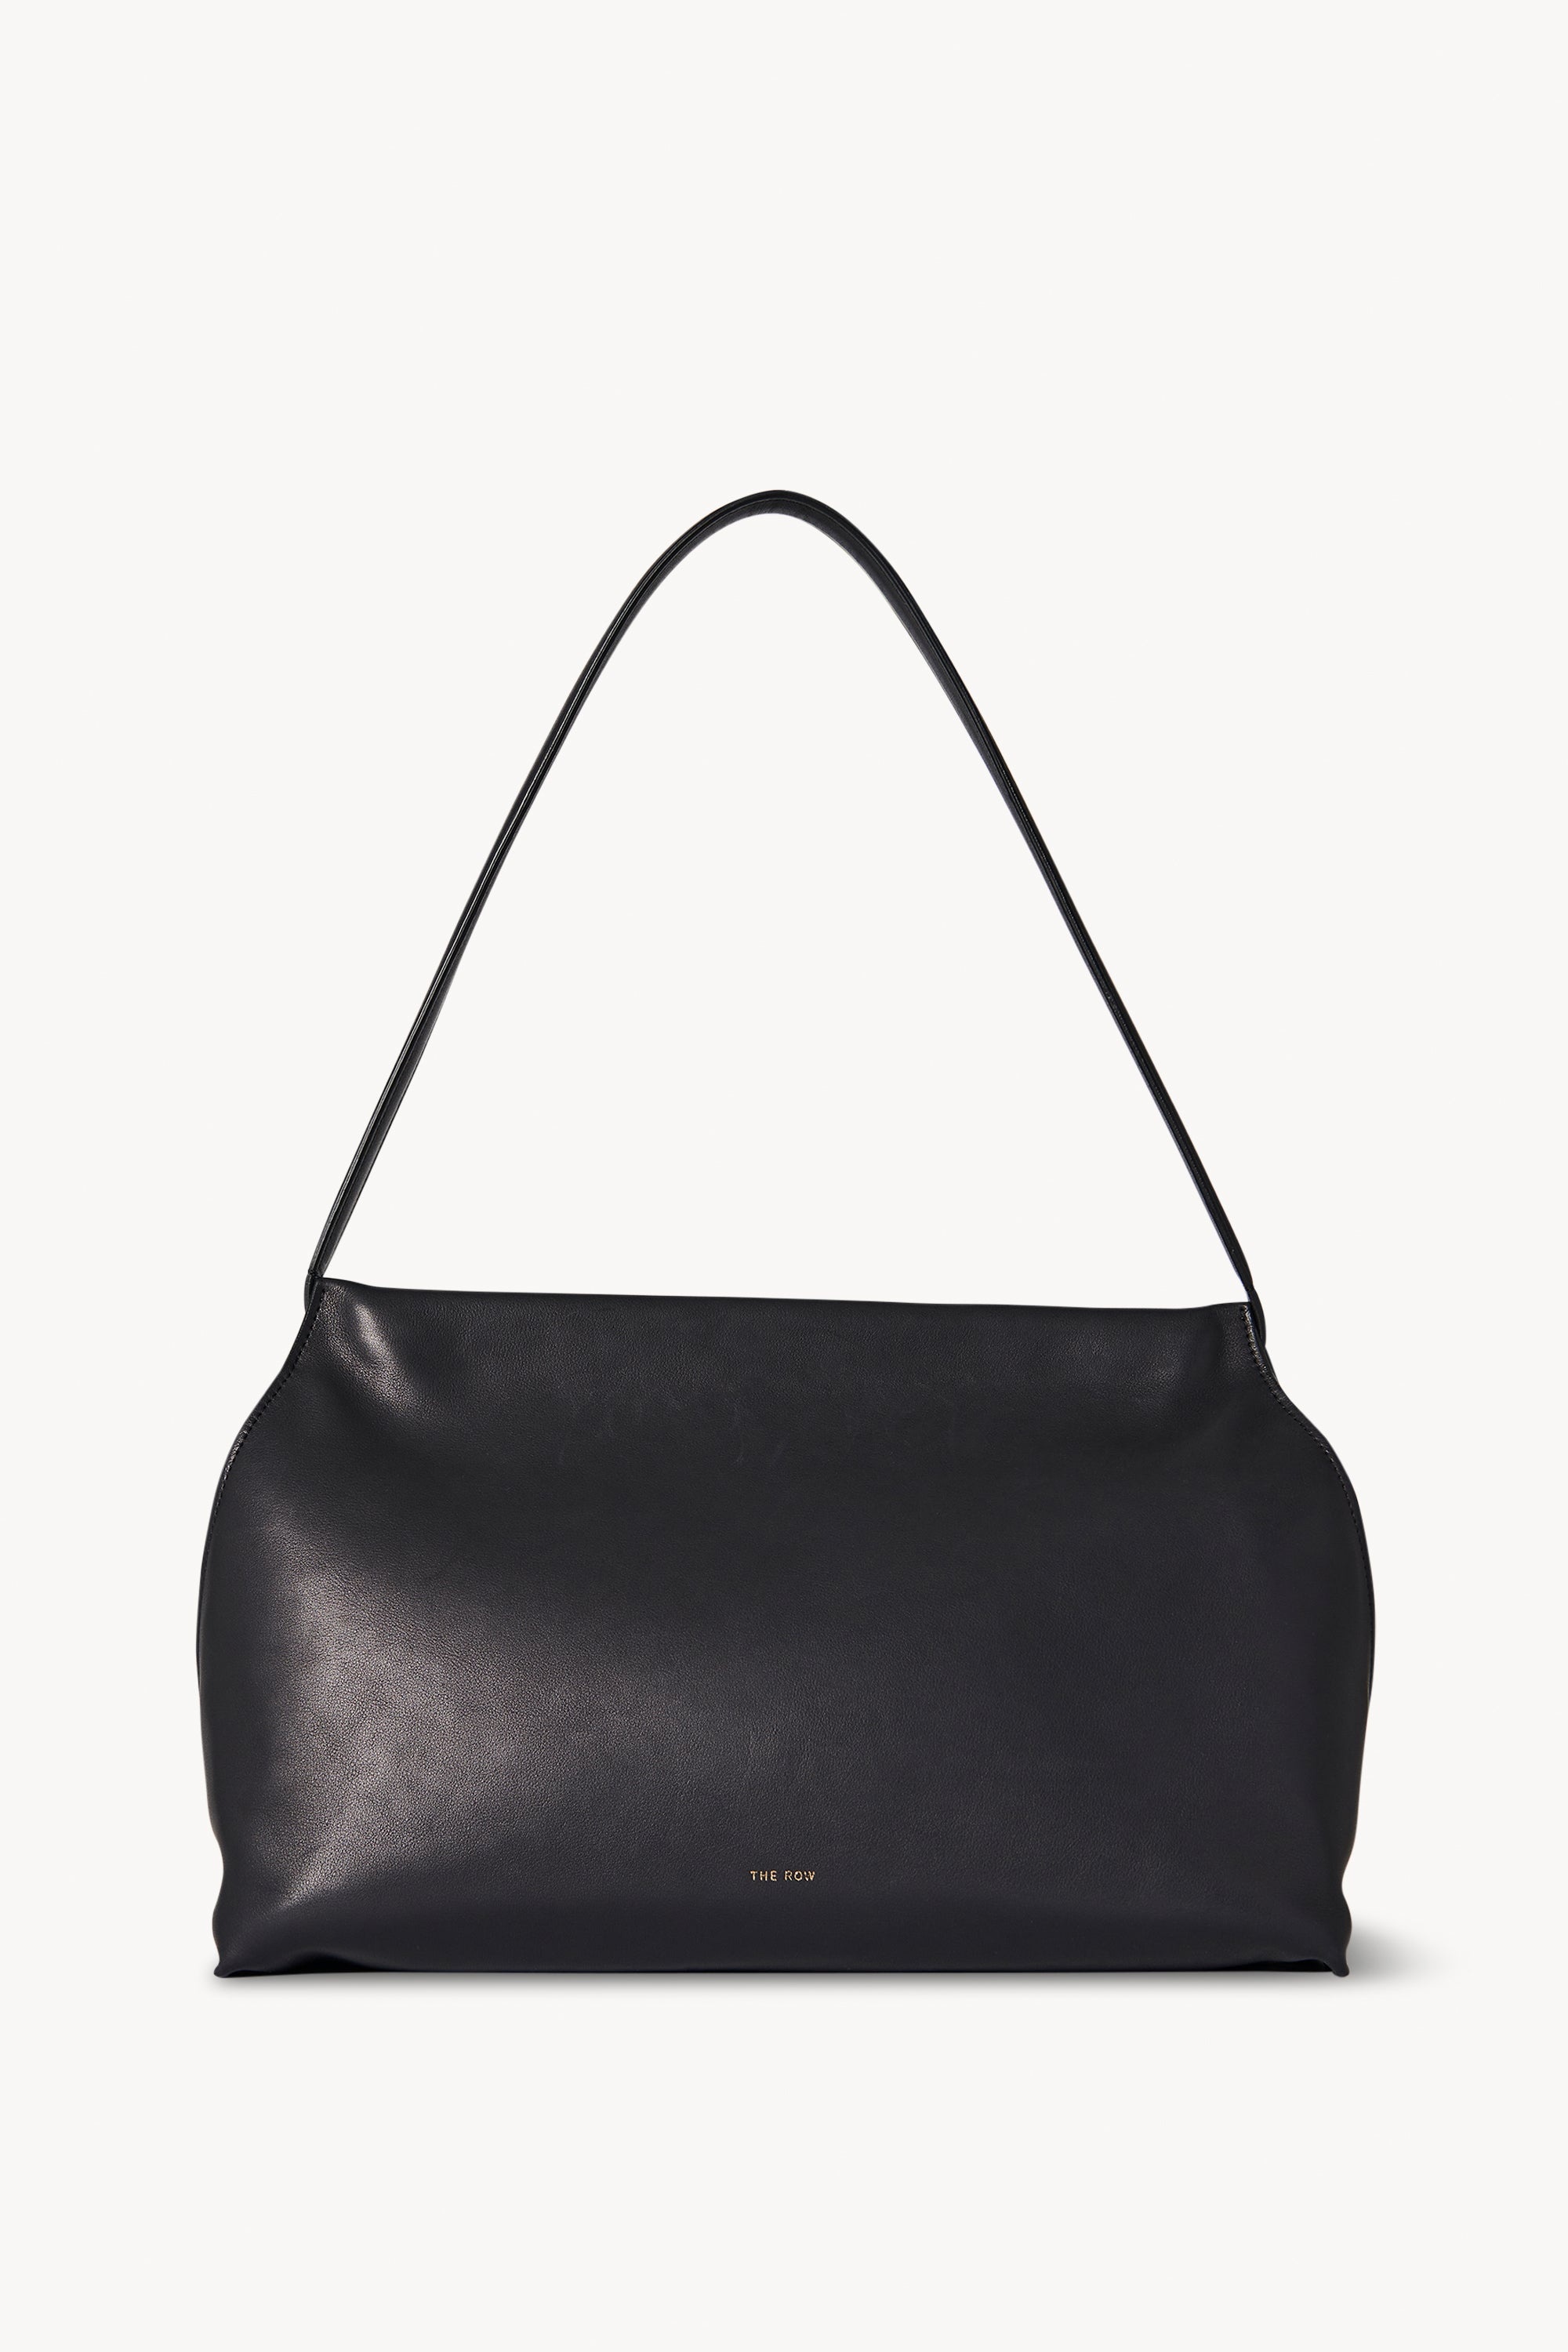 Sienna Shoulder Bag in Leather - 1